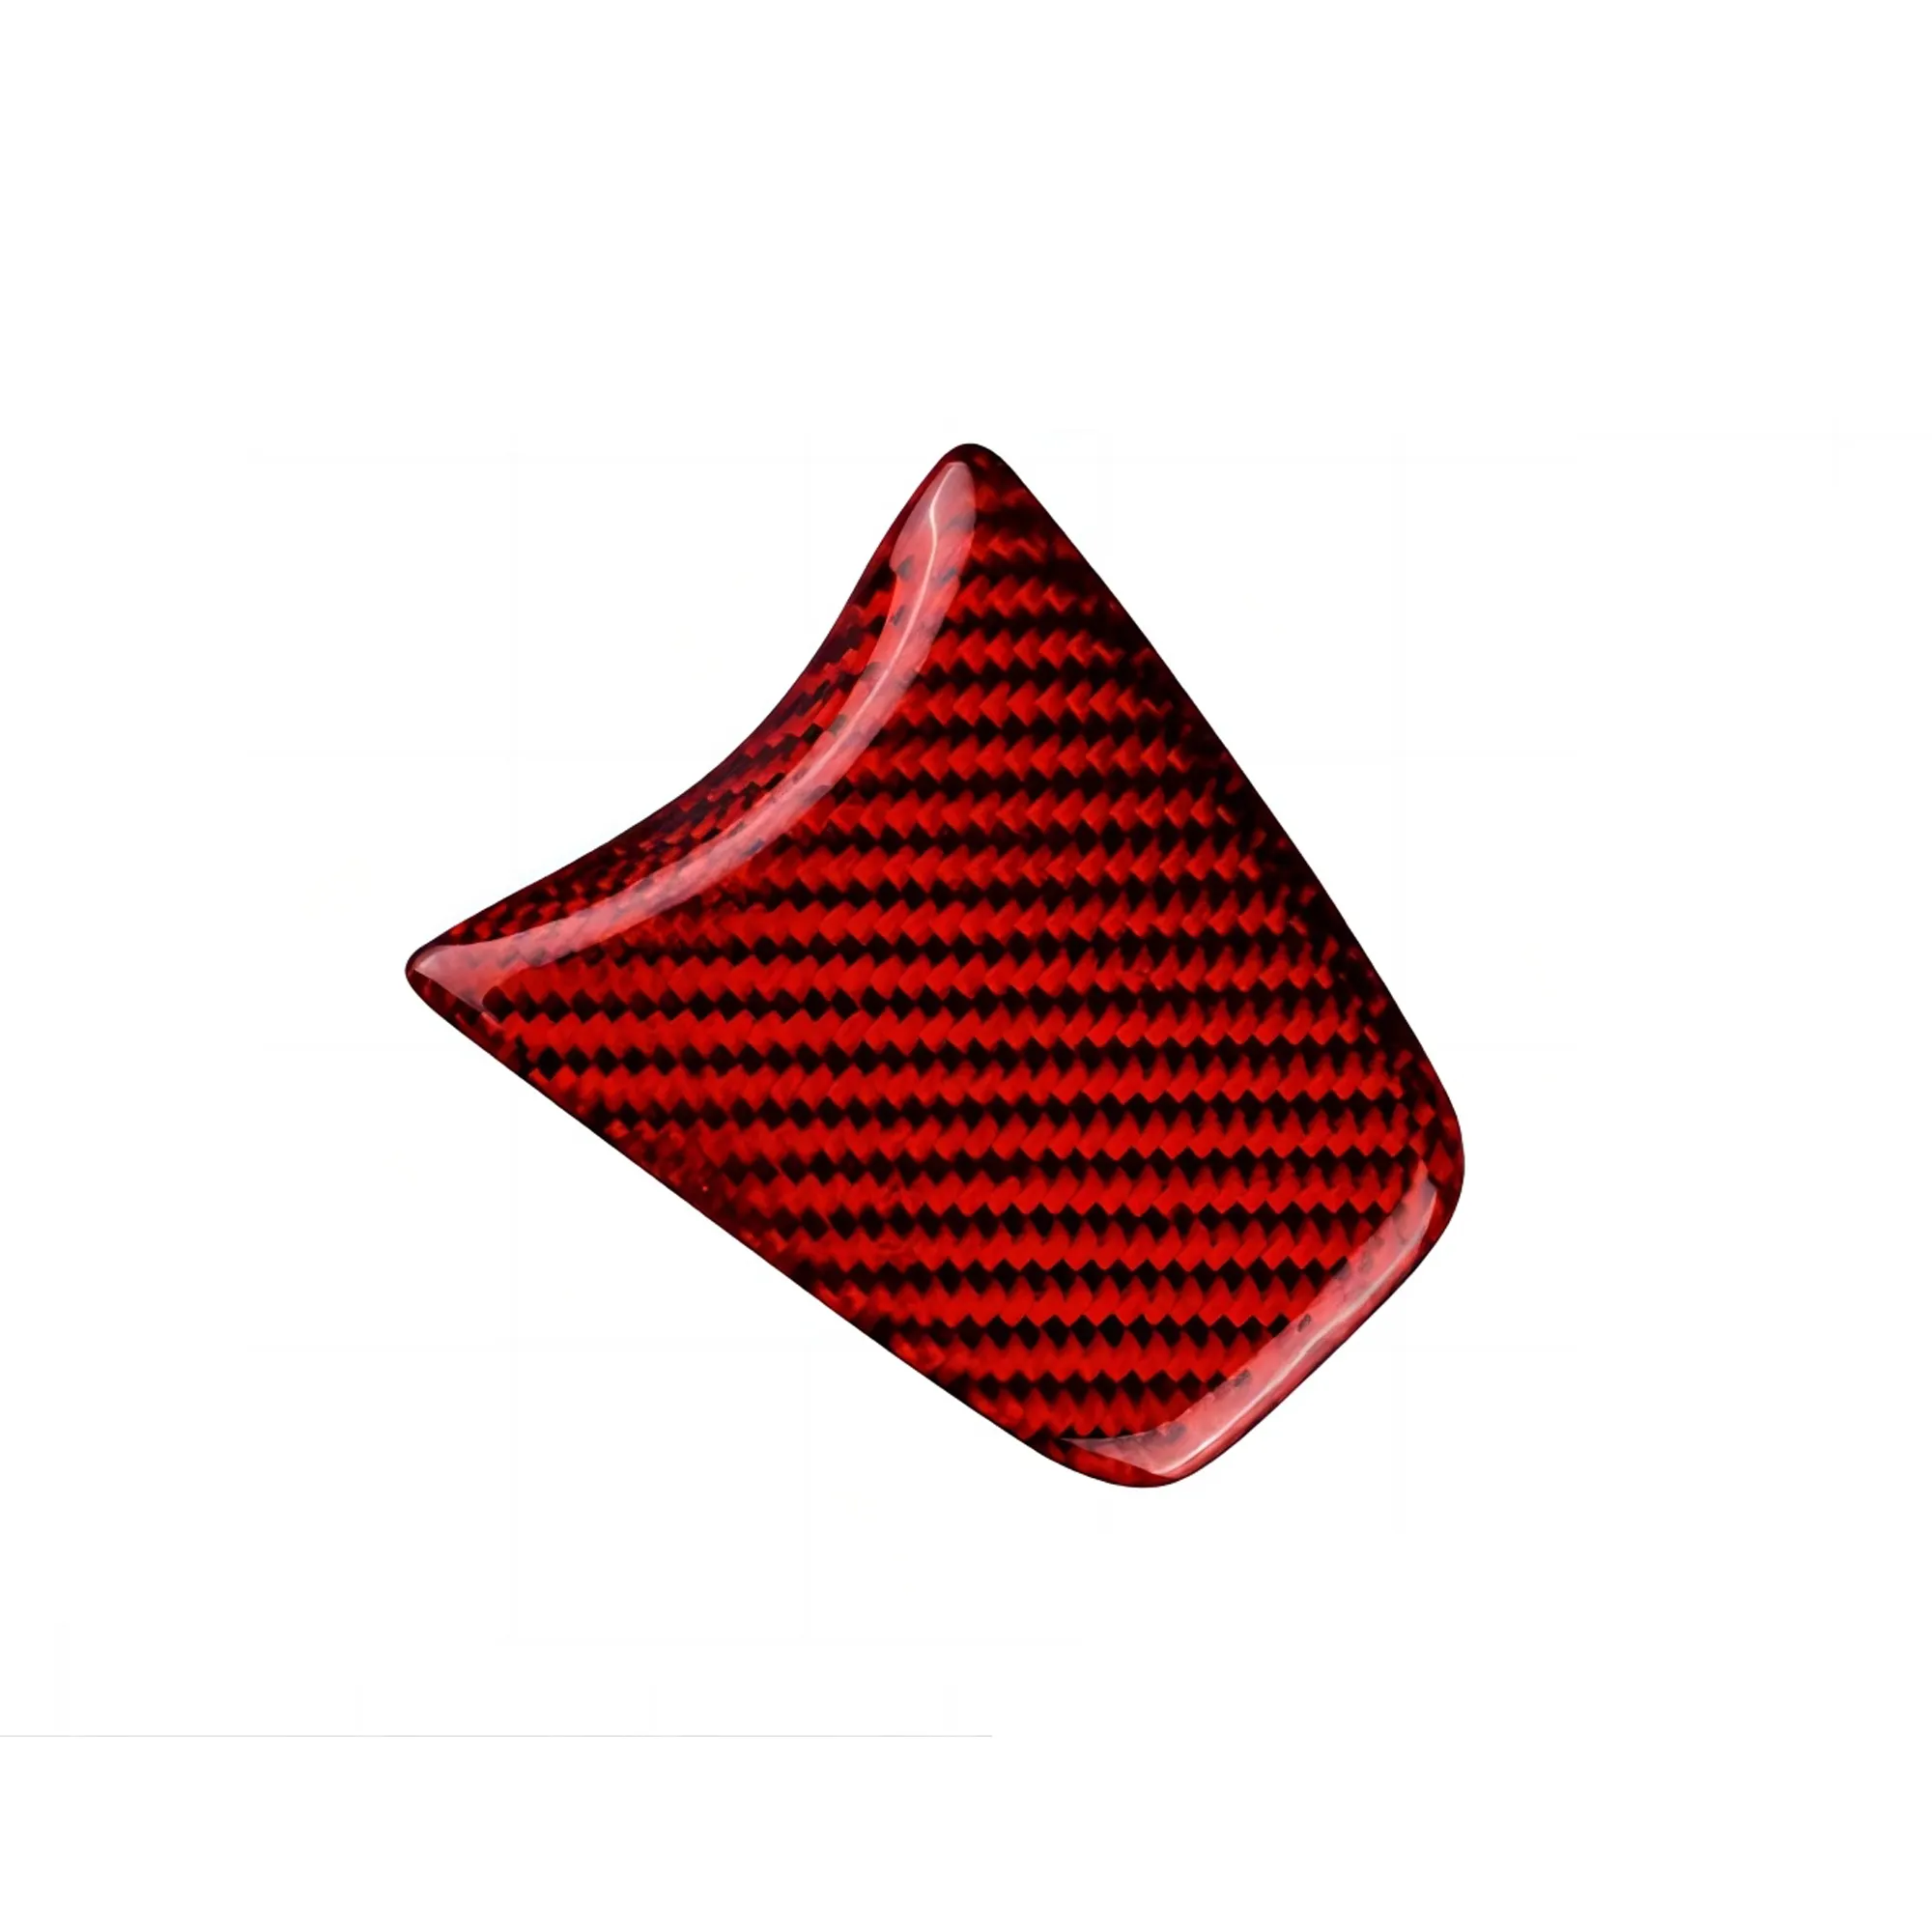 피아트 500 Abarth 595 2012 2013 2014 2015 자동차 인테리어 트림 장식 액세서리에 대한 실제 하드 탄소 섬유 스티커